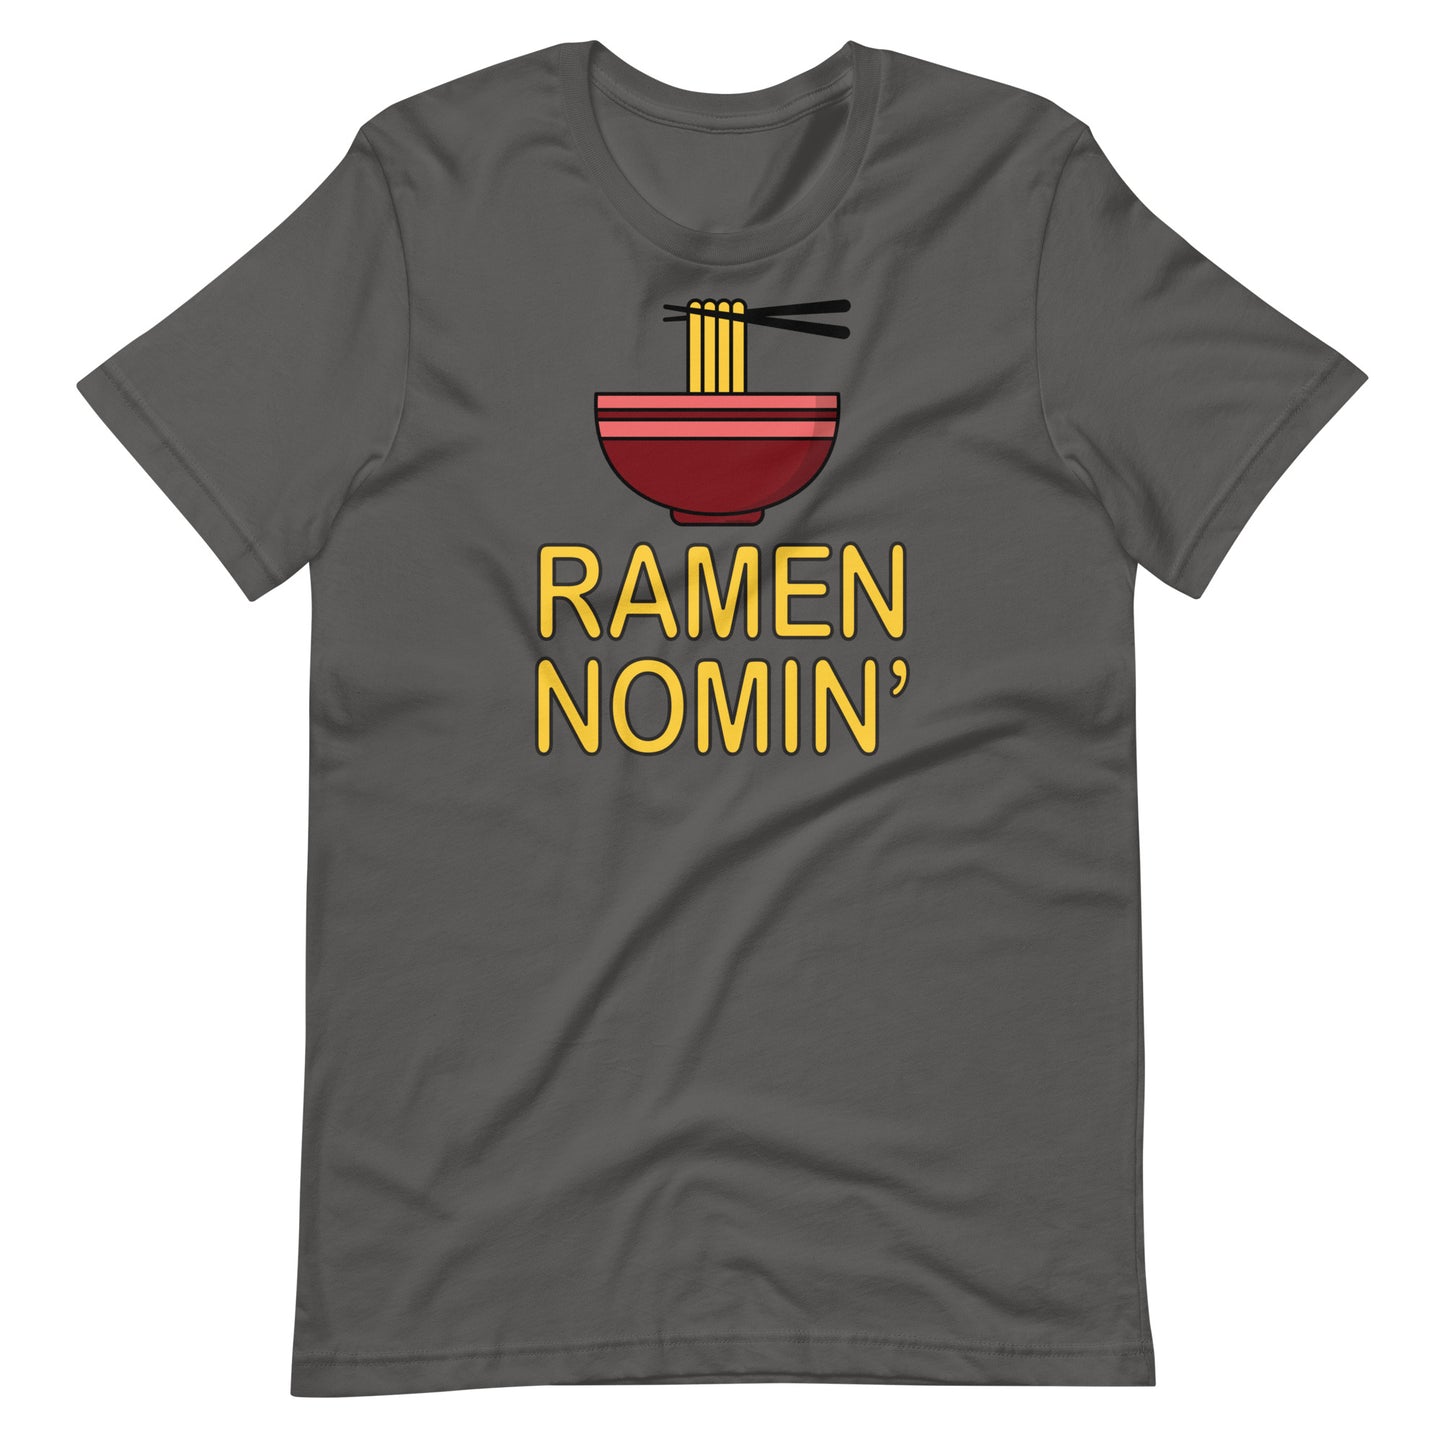 Ramen Nomin' T-shirt